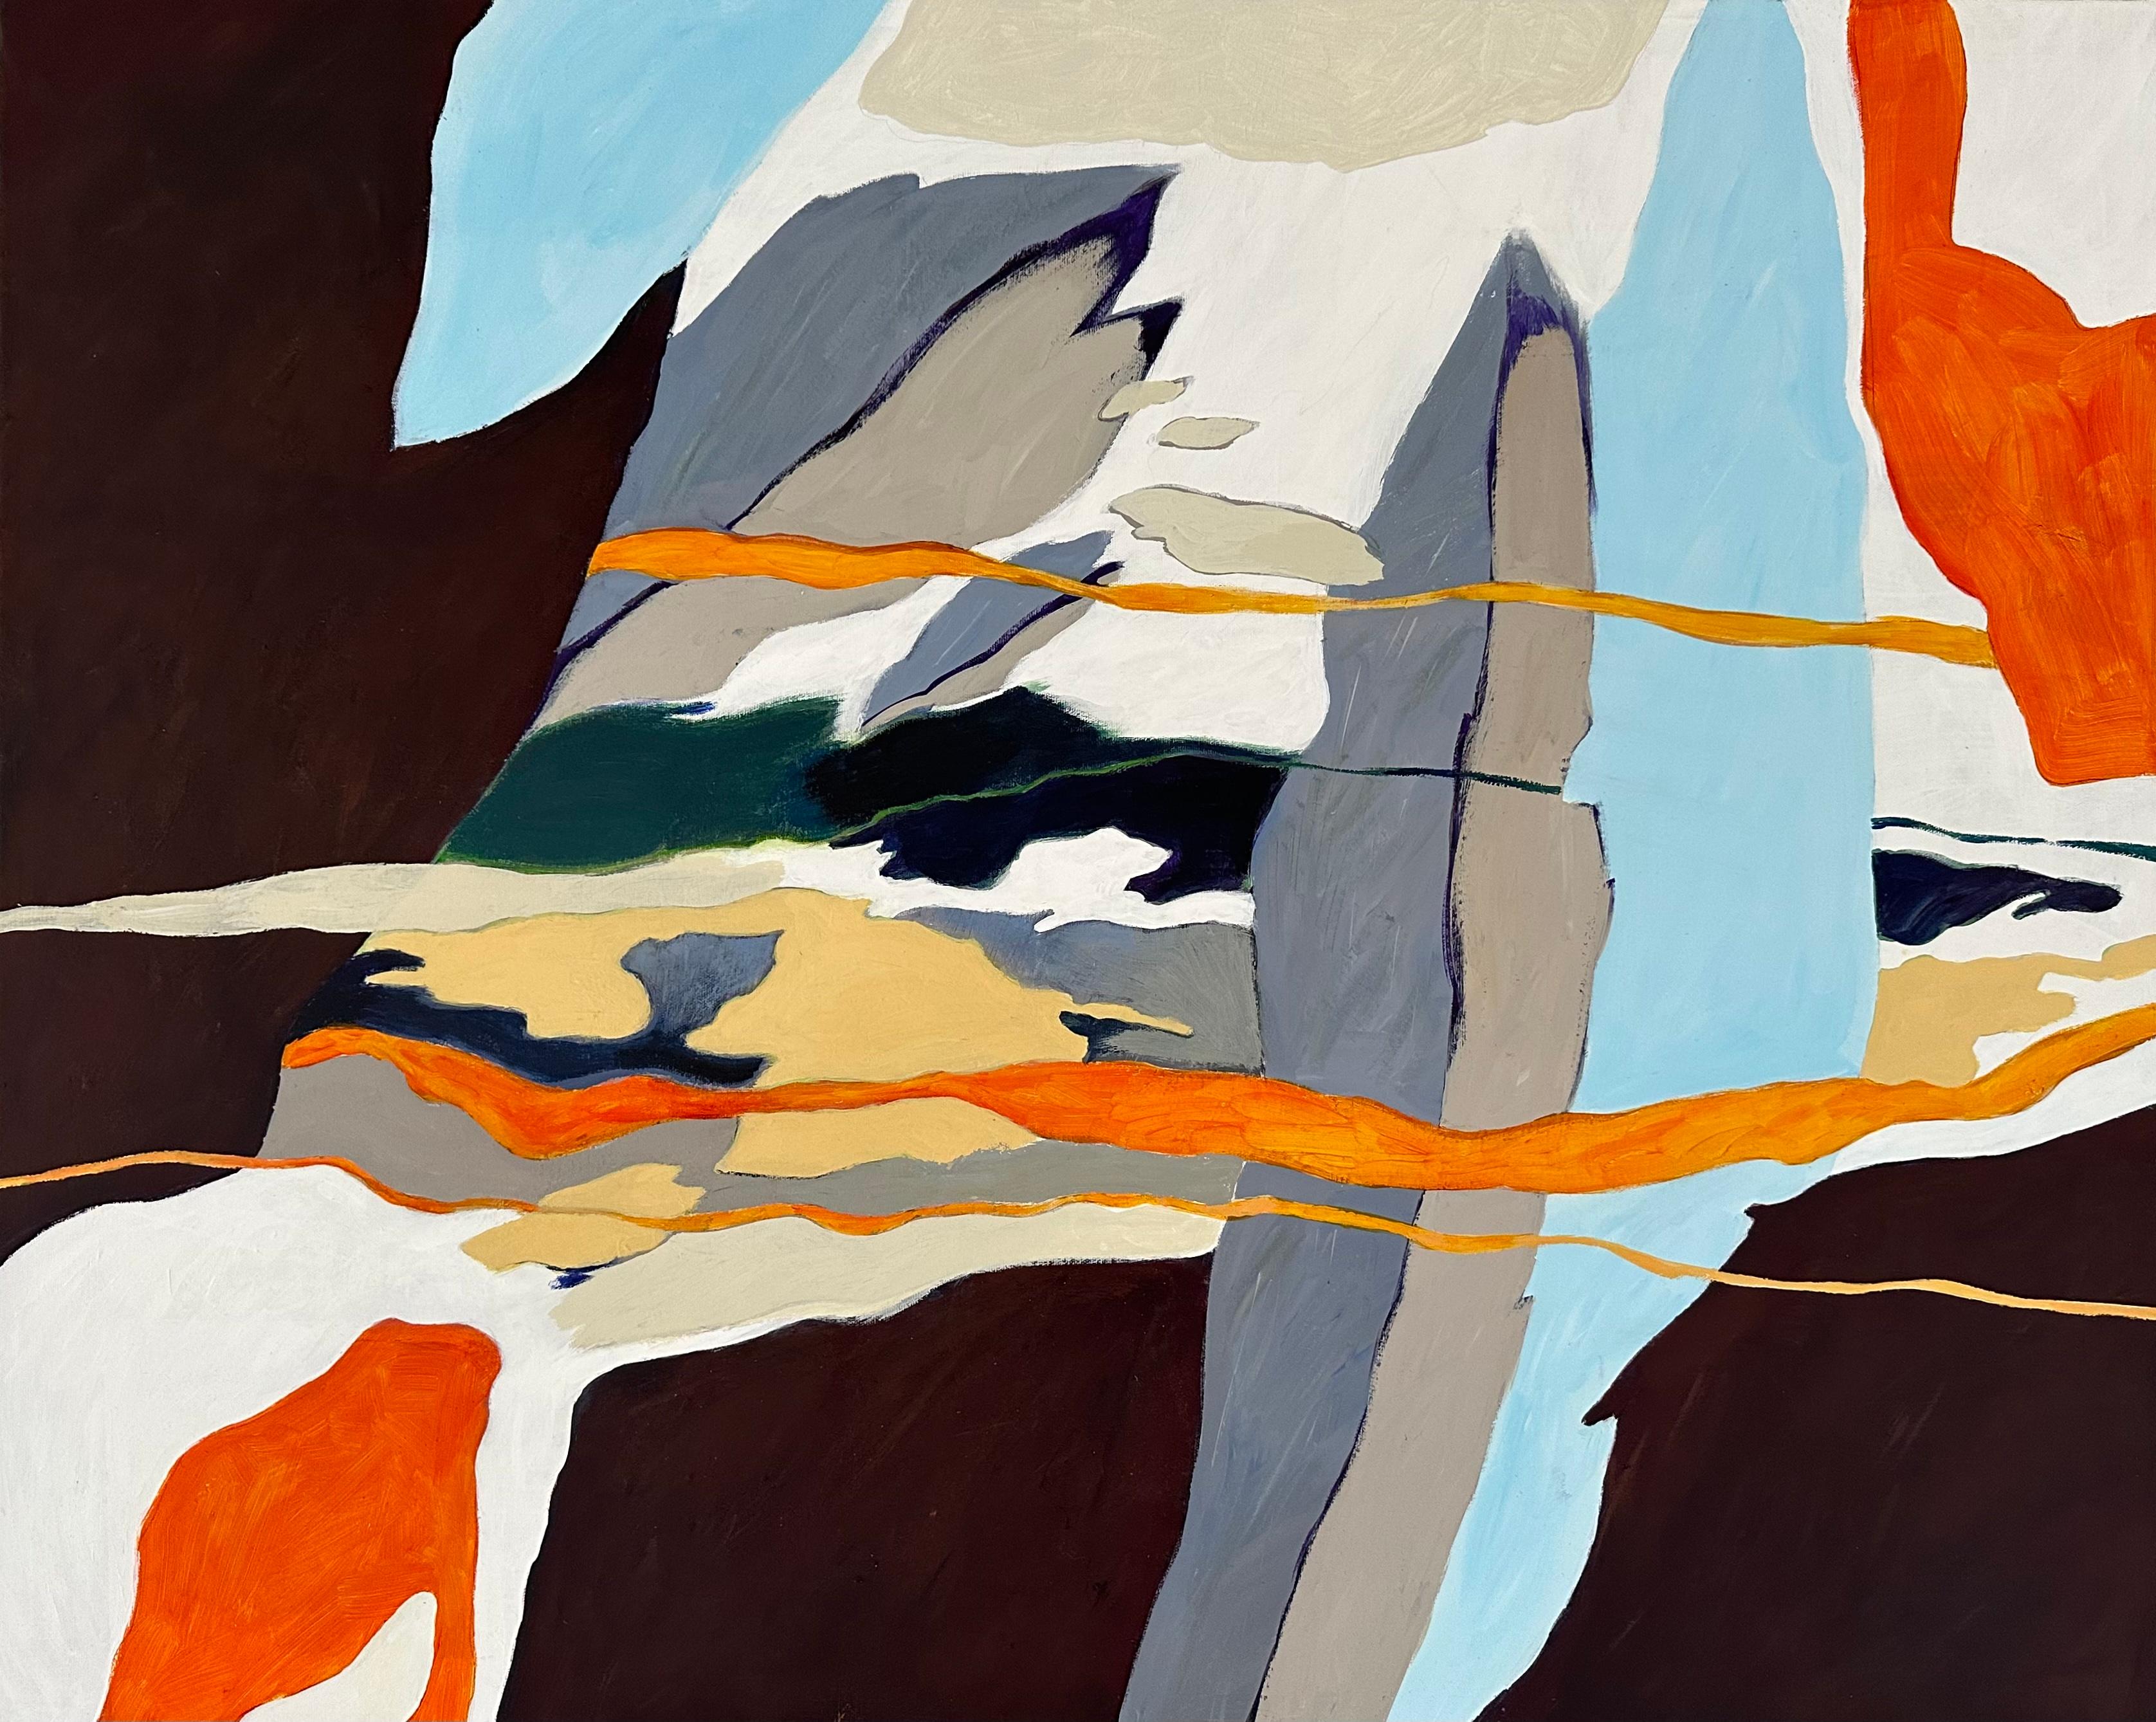 "Step Carefully" est une peinture abstraite contemporaine de l'artiste danois Steffen Bue qui vous invite à faire l'expérience d'une création vivante et dynamique. Sa palette vibrante, composée d'orange vif, de gris, de bleu clair et de petites